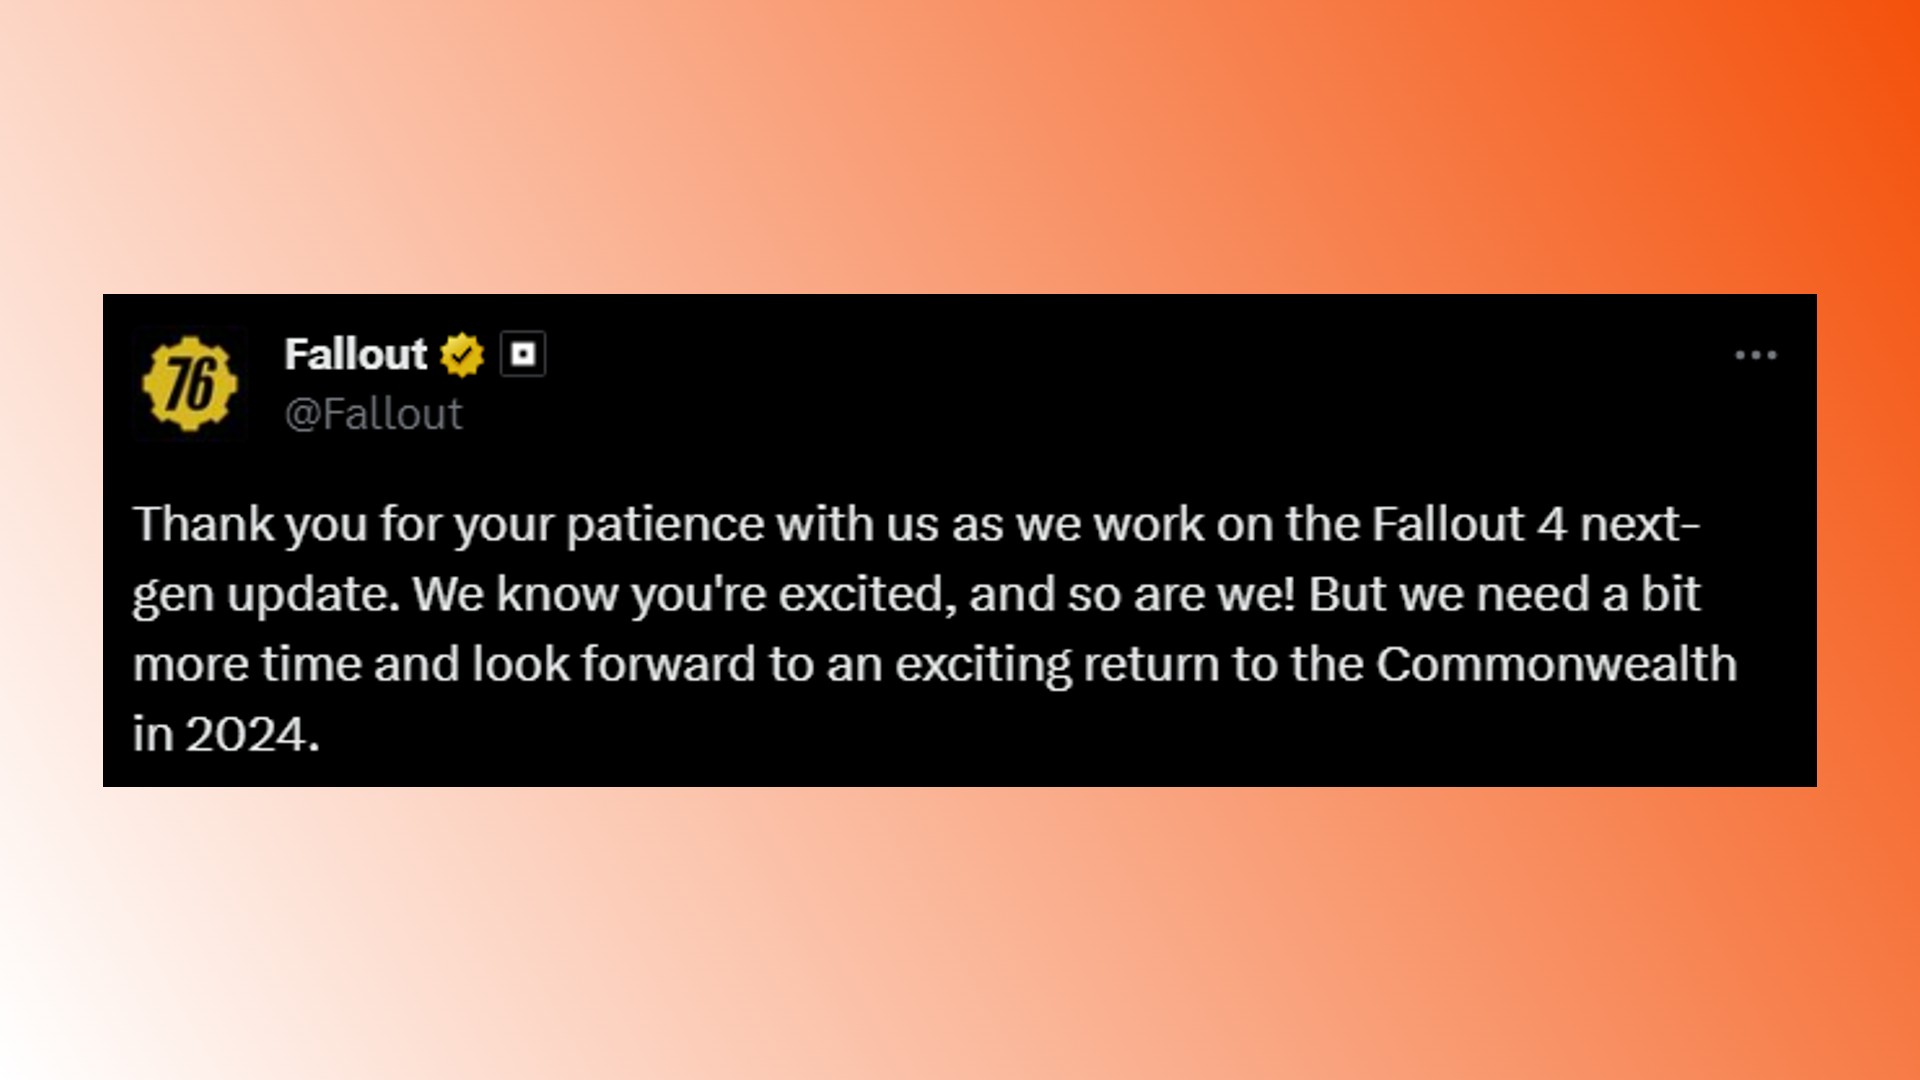 Fallout 4 next-gen update Bethesda: A statement from Fallout Twitter about the Fallout 4 next-gen update